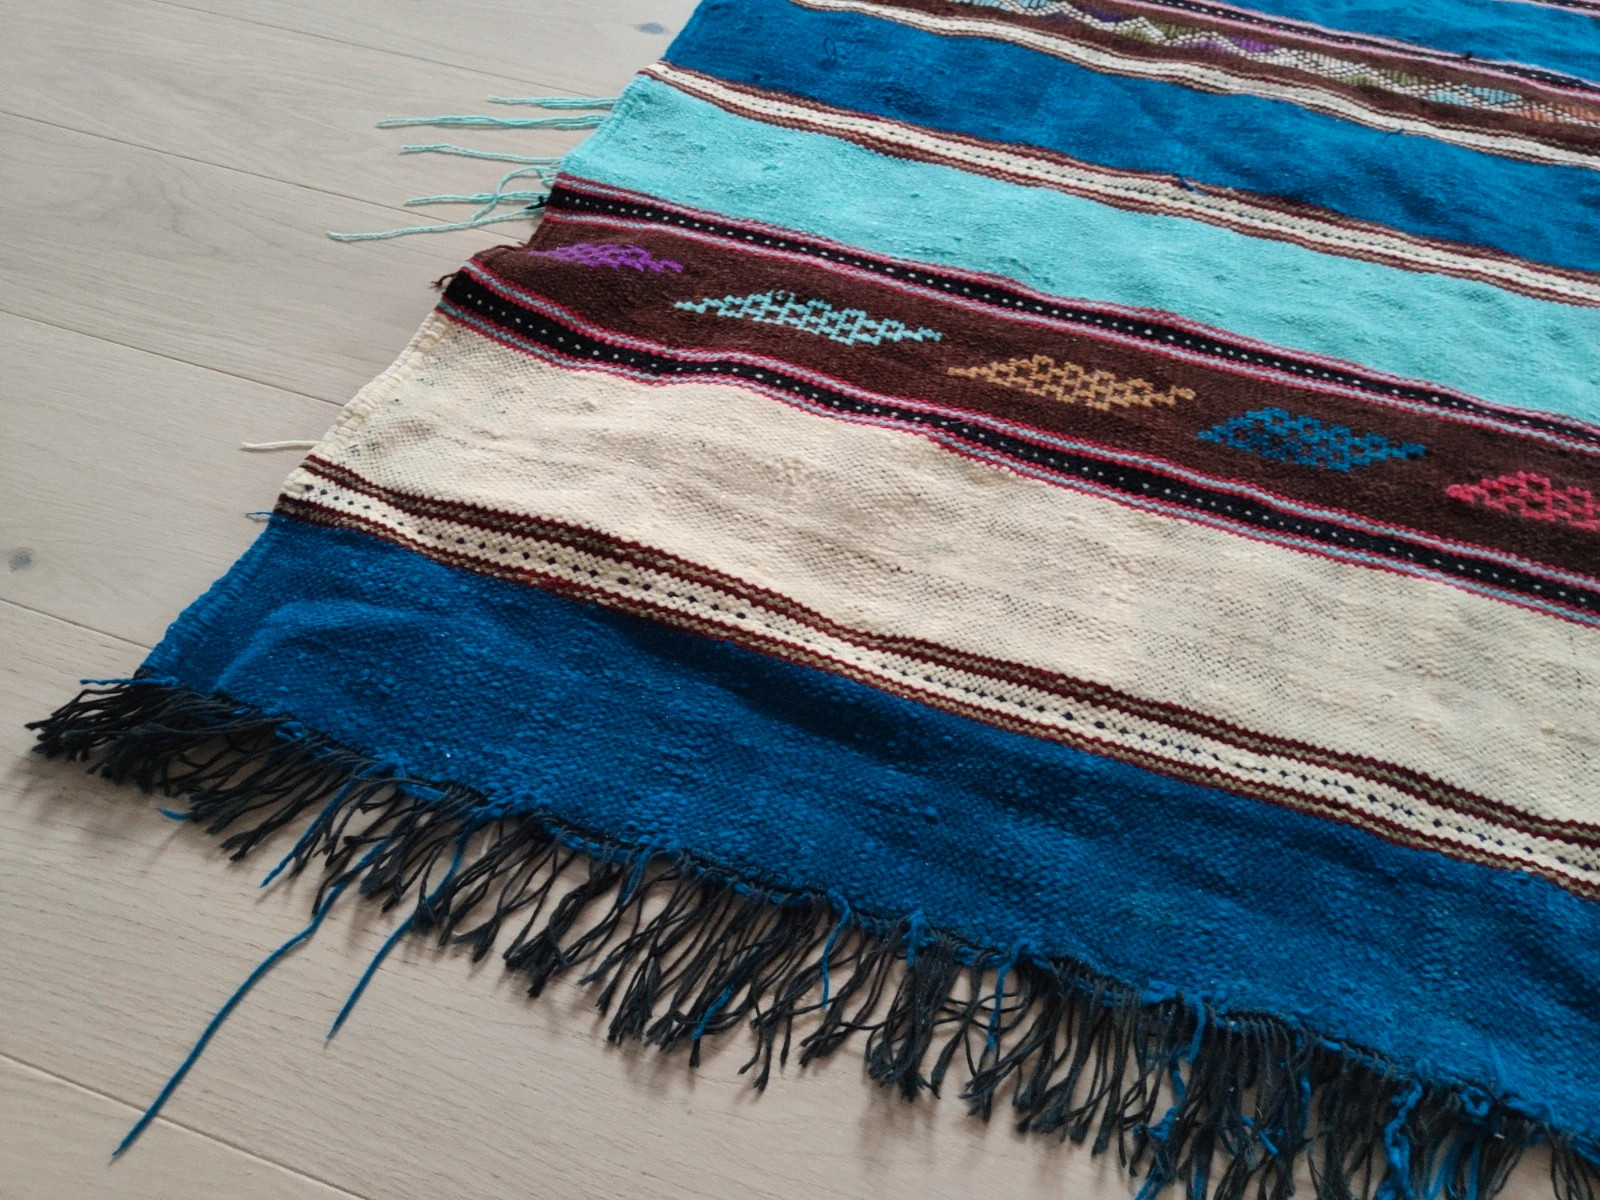 Dywan Marokański ręcznie tkany niepowtarzalny

Boho